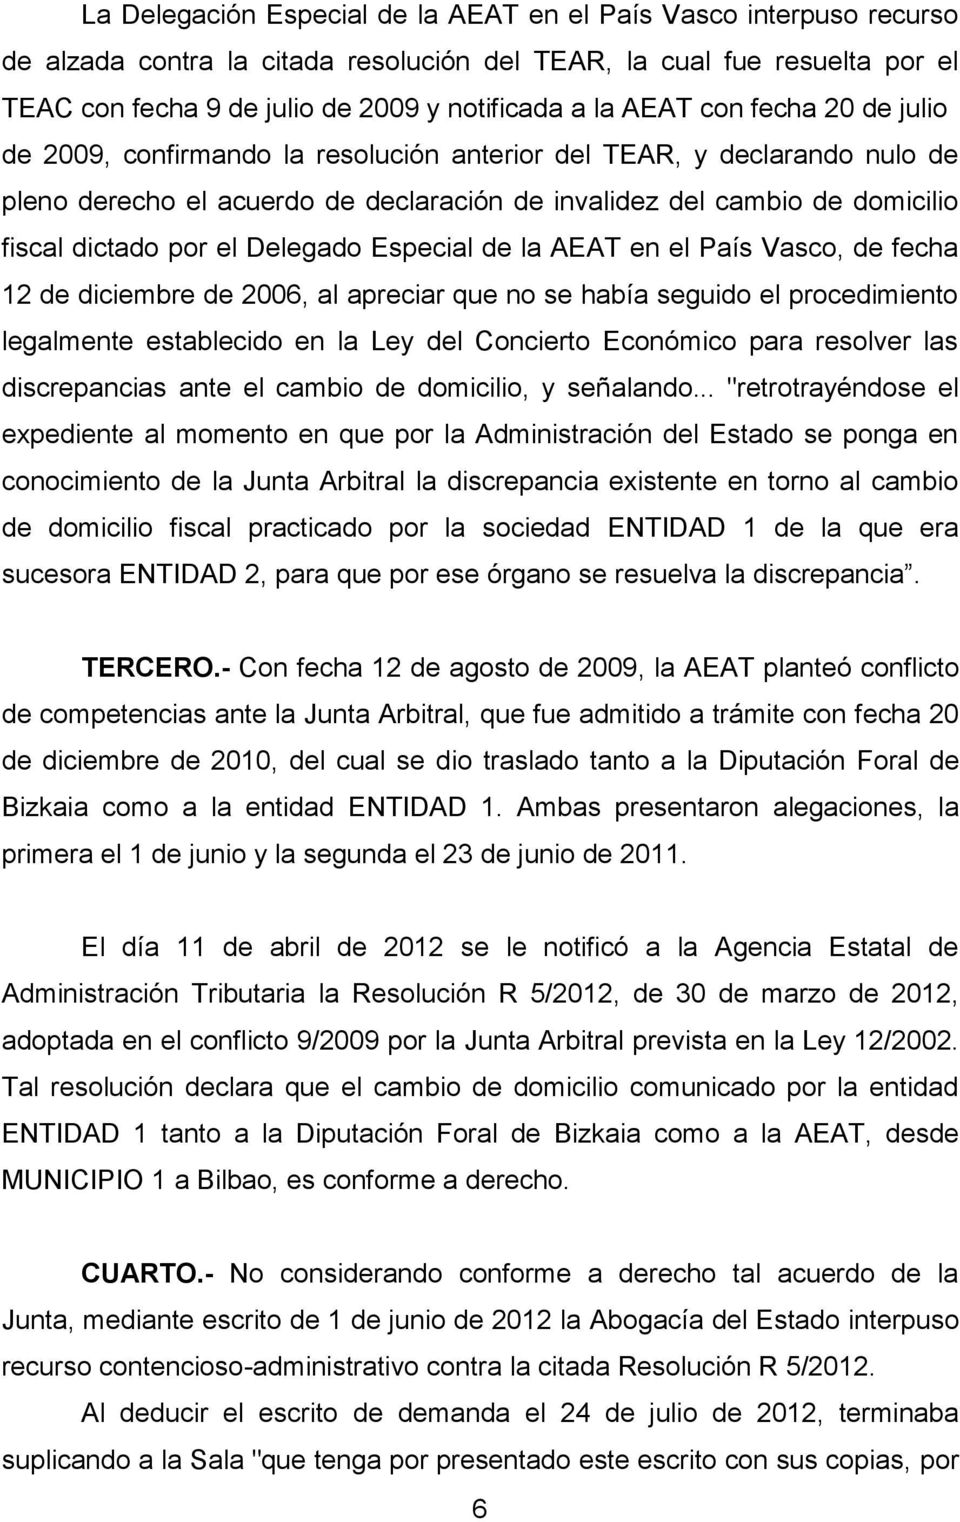 el Delegado Especial de la AEAT en el País Vasco, de fecha 12 de diciembre de 2006, al apreciar que no se había seguido el procedimiento legalmente establecido en la Ley del Concierto Económico para